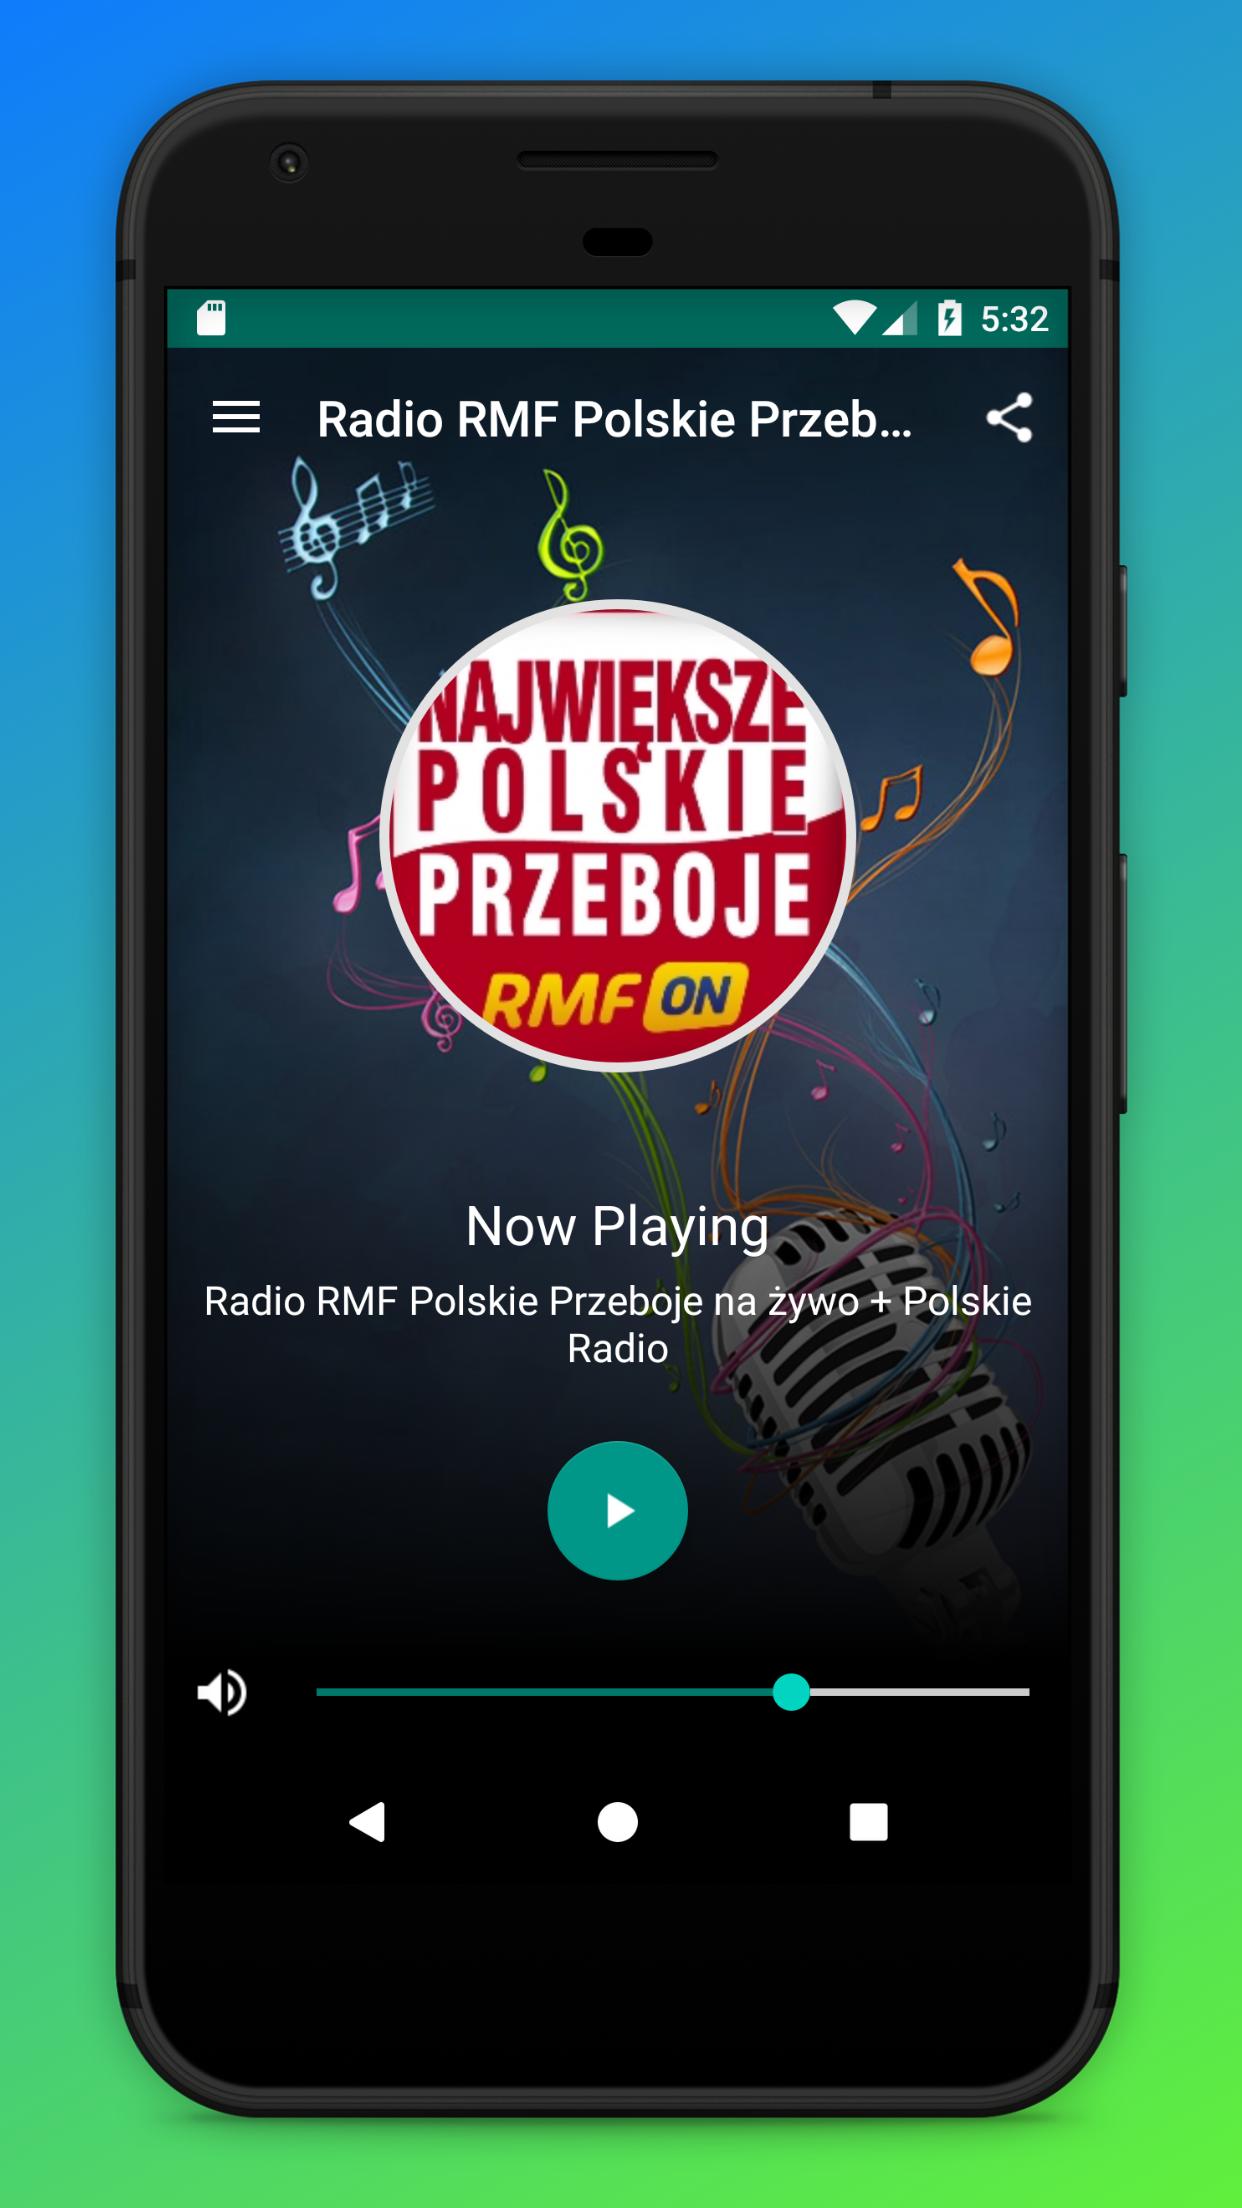 Radio RMF Polskie Przeboje na żywo + Polskie Radio for Android - APK  Download